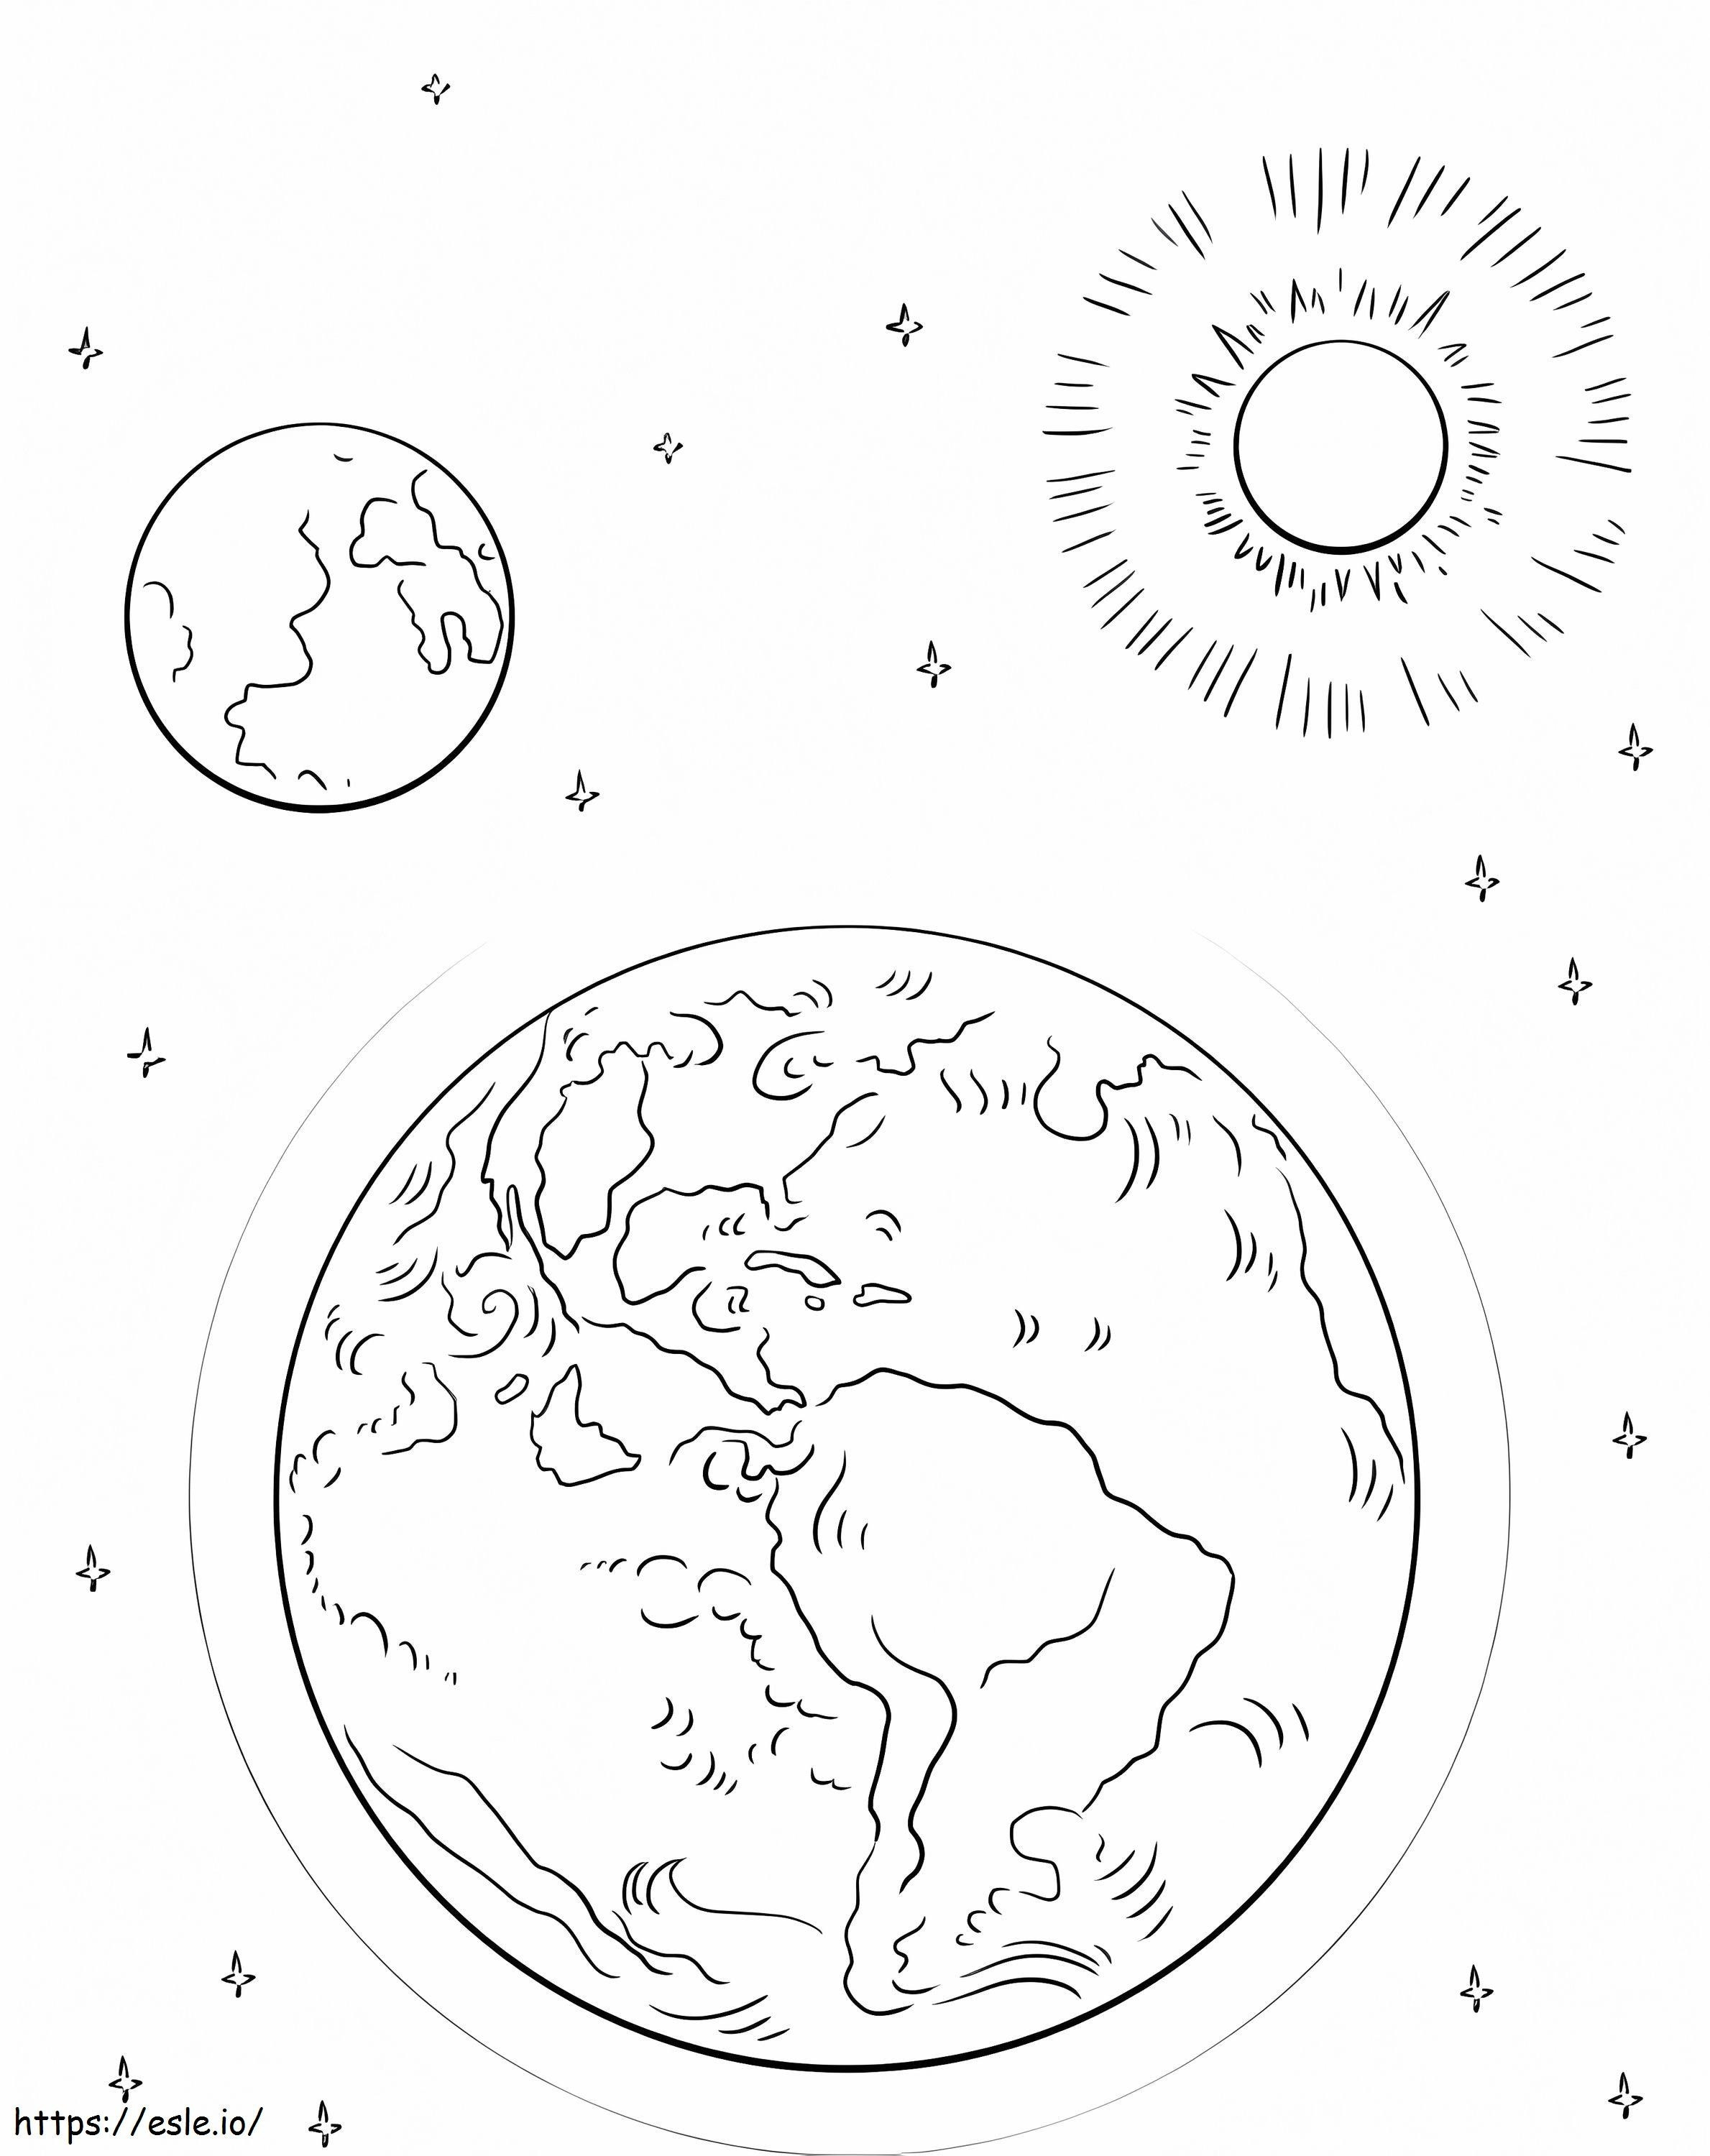 Dünya Ay ve Güneş boyama